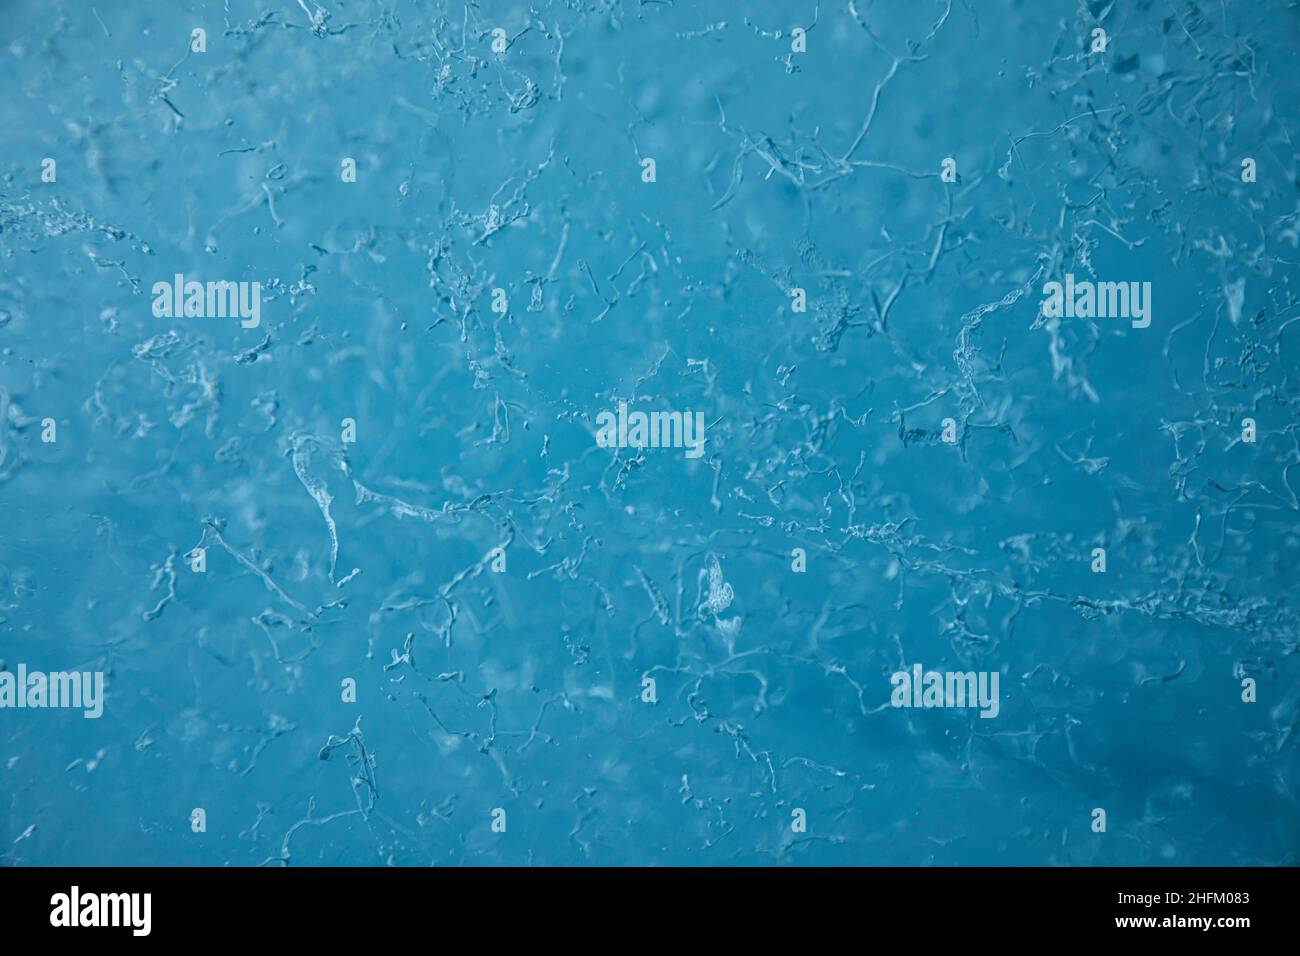 Luftblasen, die in einem Eisgletscher gefangen sind Stockfoto